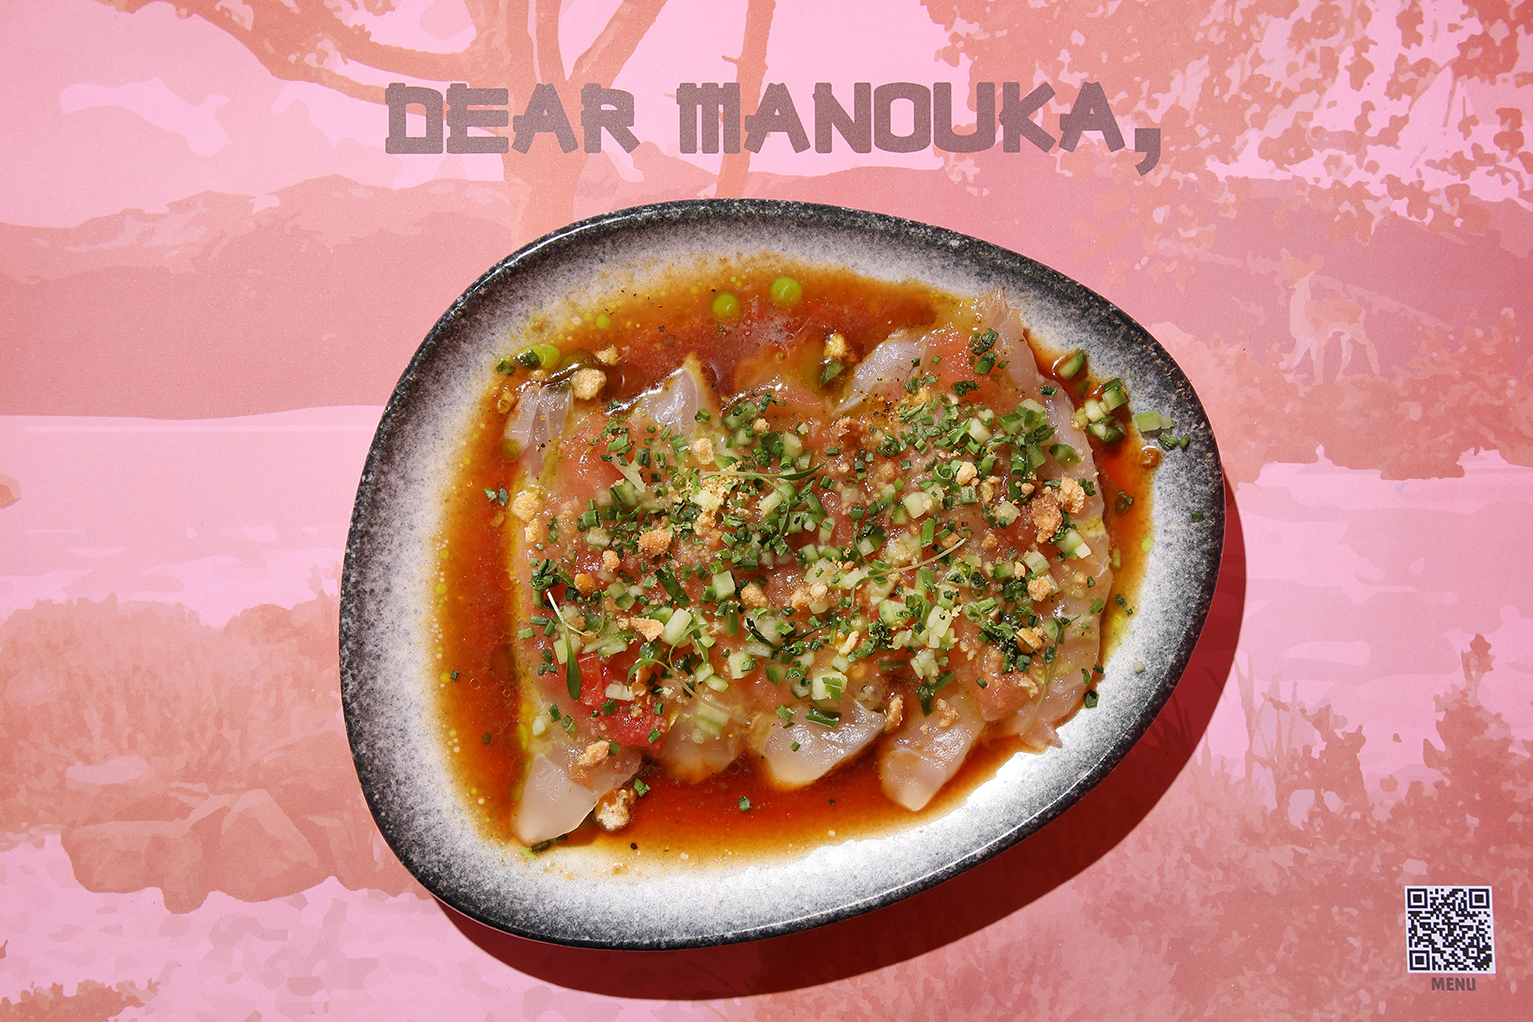 Dear Manouka